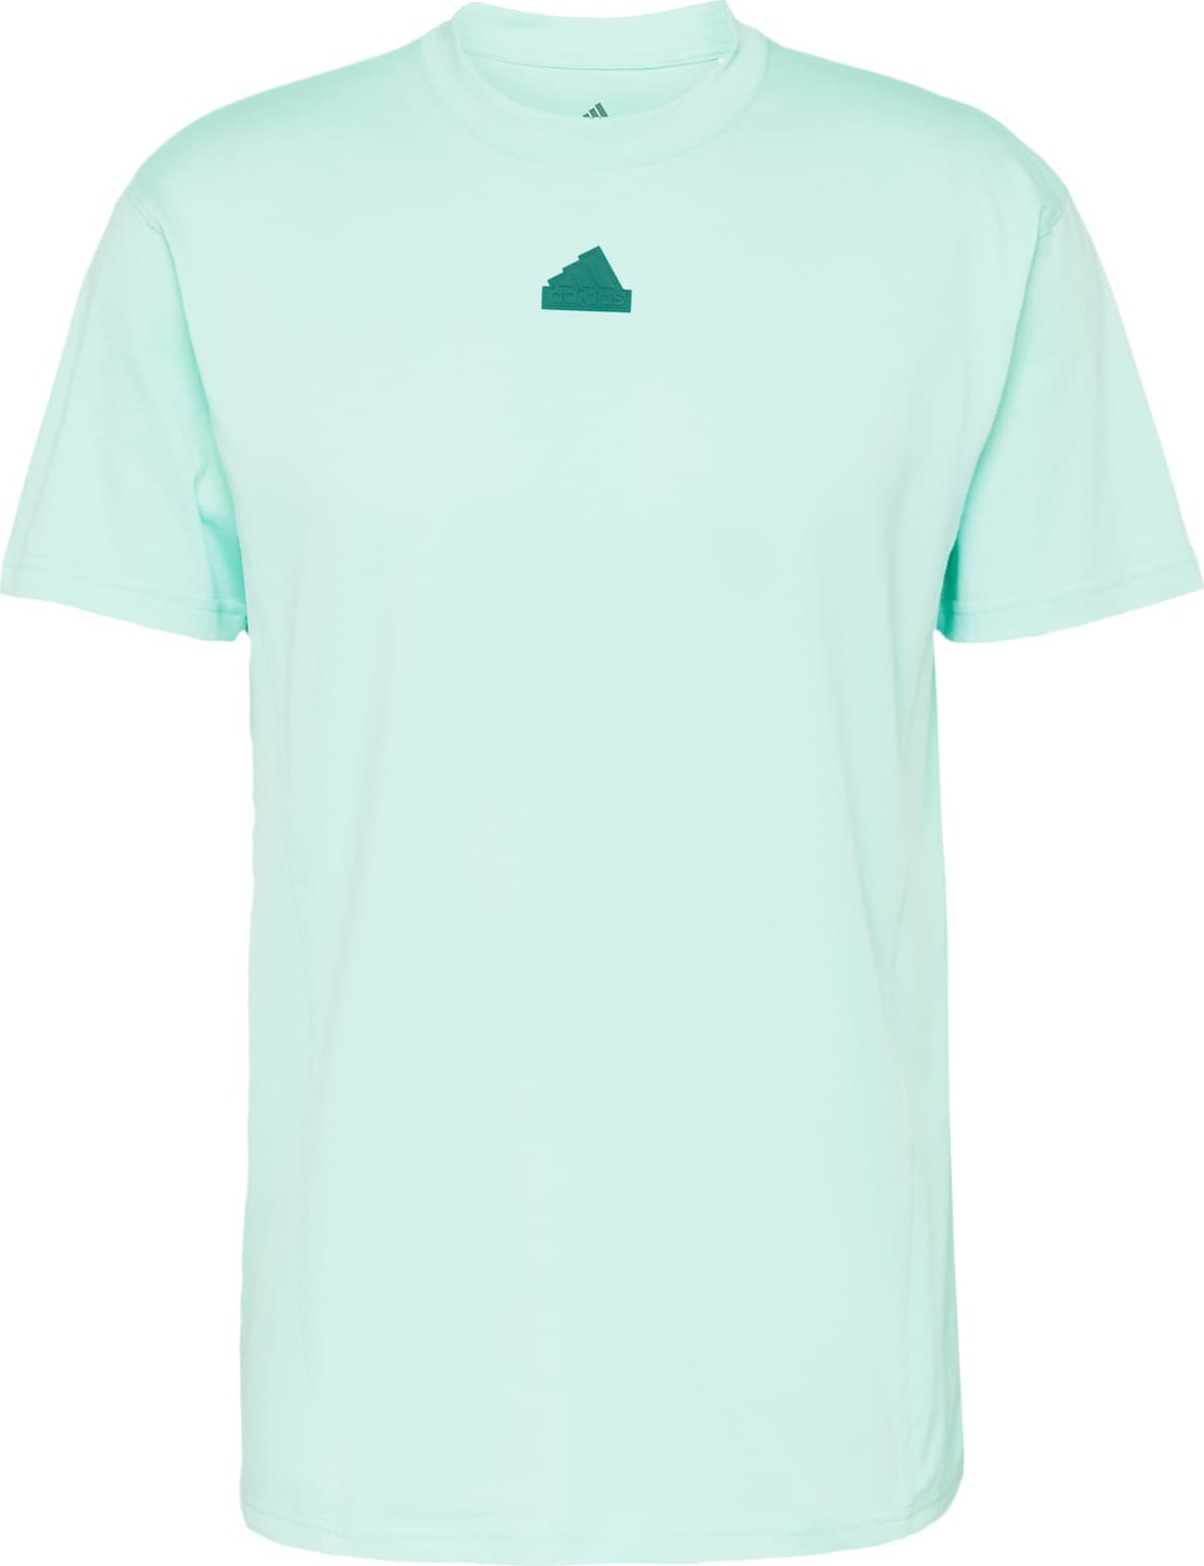 ADIDAS SPORTSWEAR Funkční tričko mátová / tmavě zelená